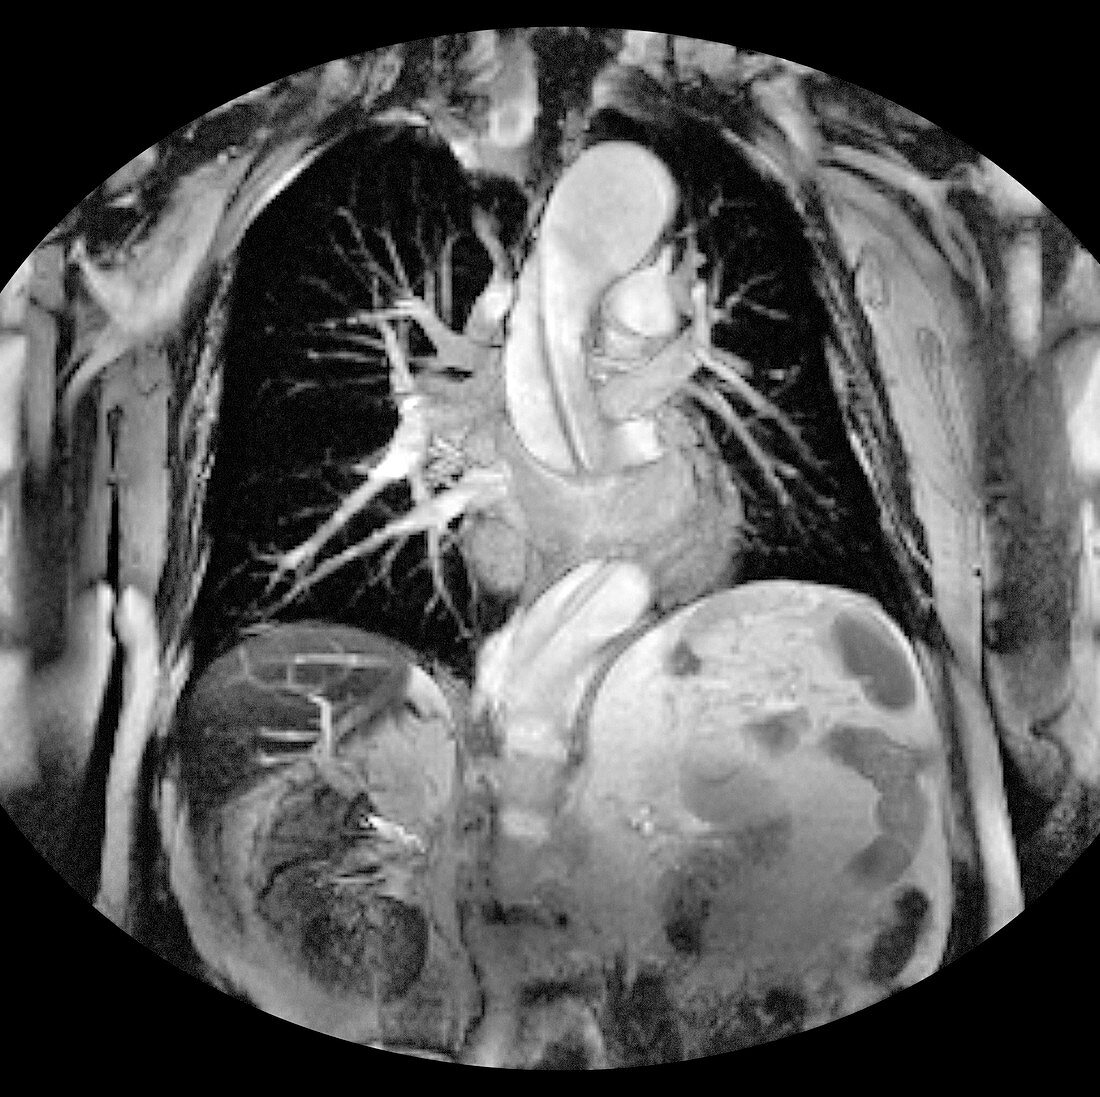 Dissecting aorta,MRI scan